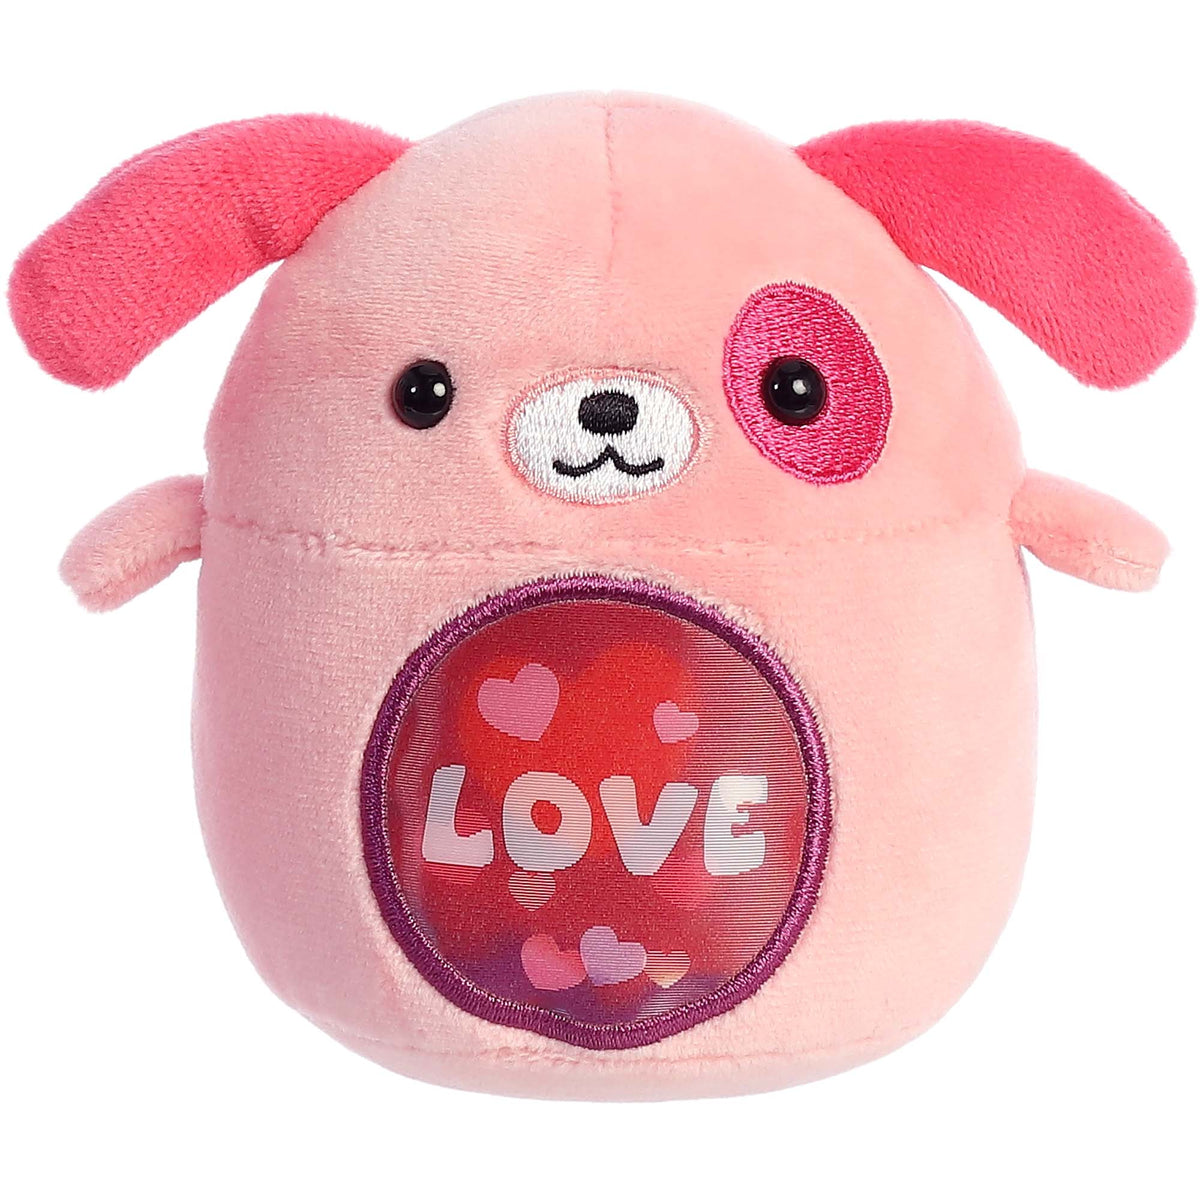 Aurora World Valentine's Day "Love" Pink Dog Plush, 3.5 Inches, 1 Count 092943771093